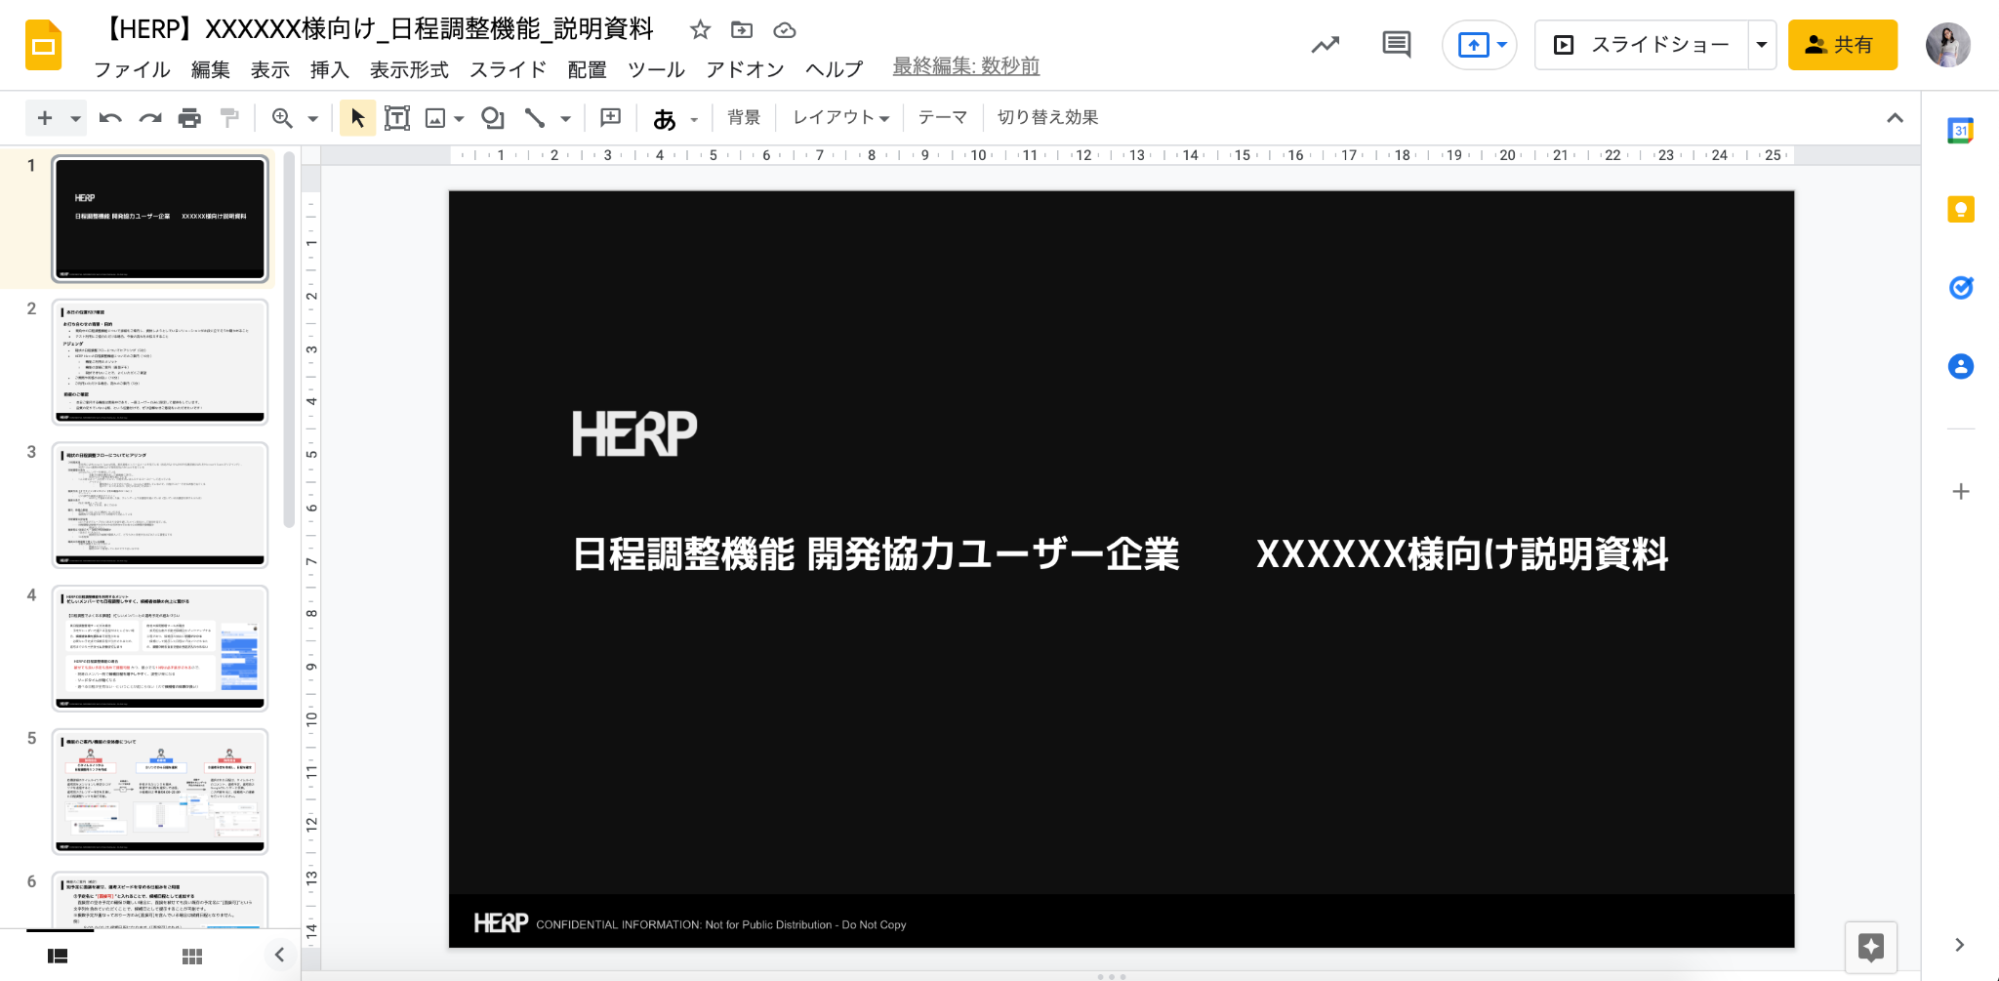 「HERP 日程潮汐能 開発協力ユーザー企業 XXXXXX様向け説明資料」と書かれたスライド。